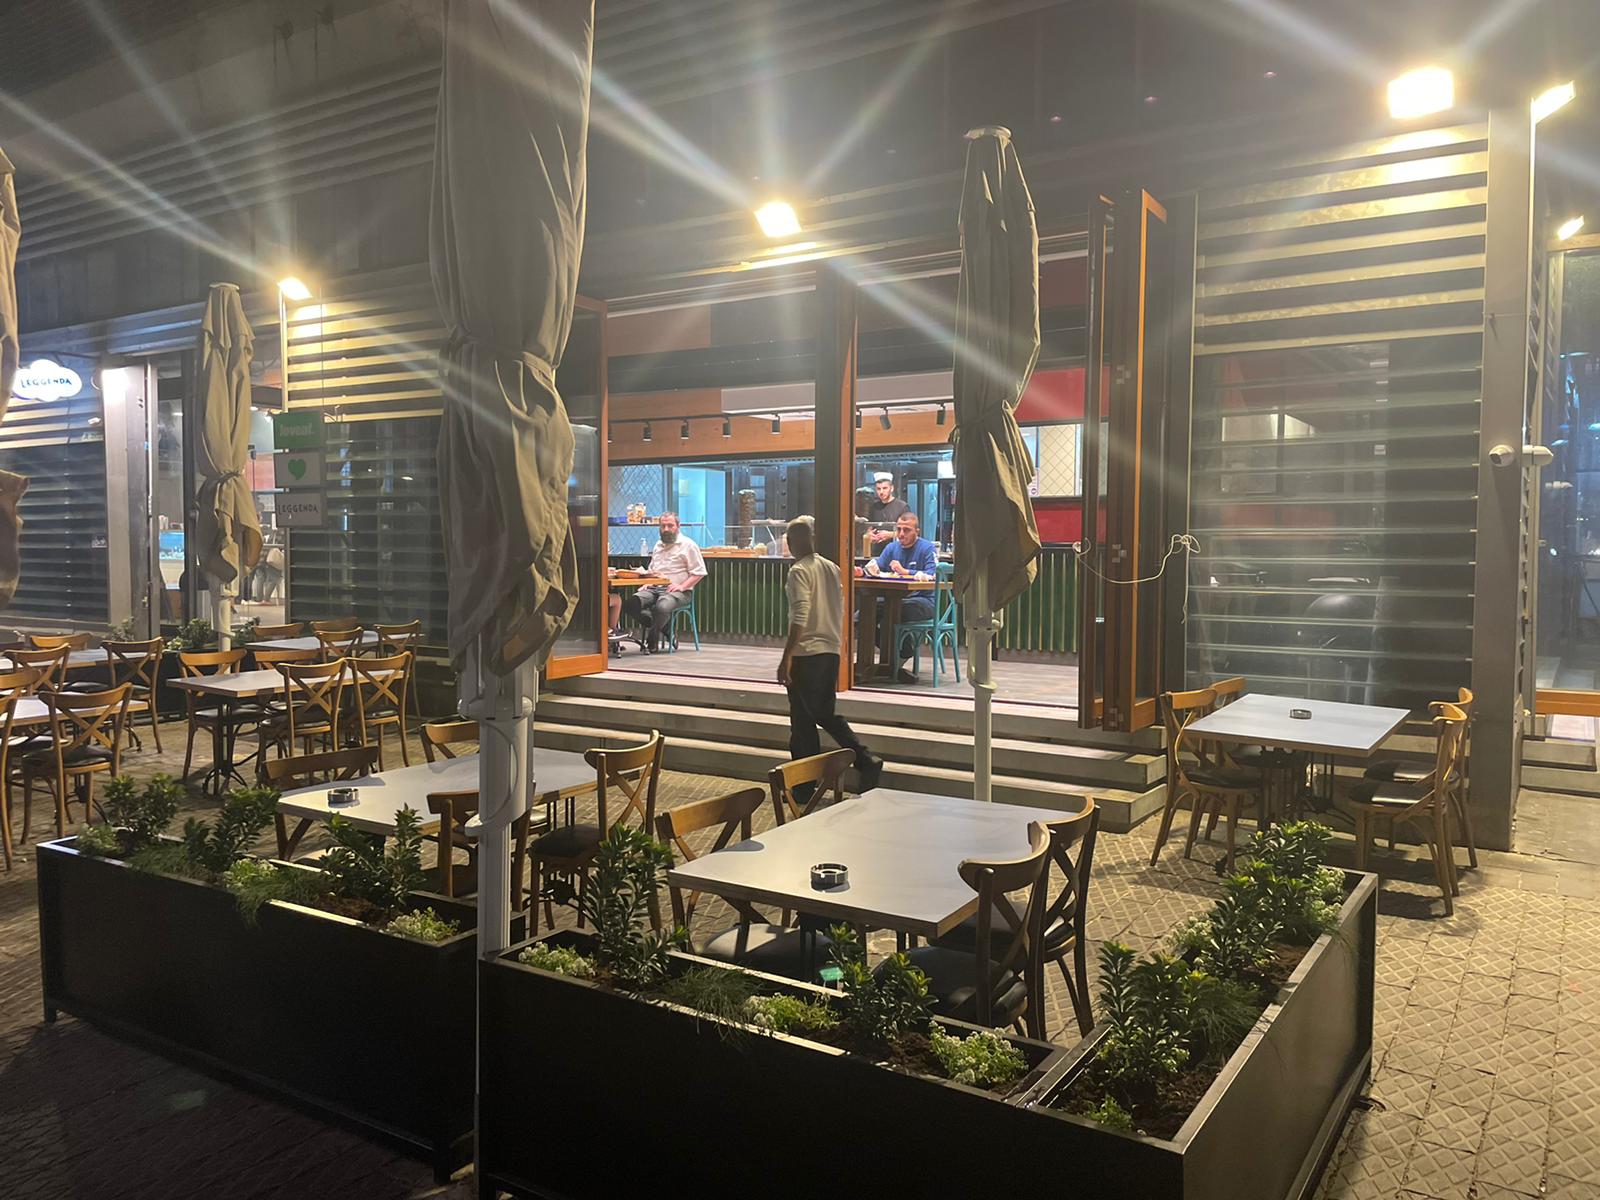 جديد في يافا - مطعم شاورما أرطغرل بإدارة أمير كبوب 